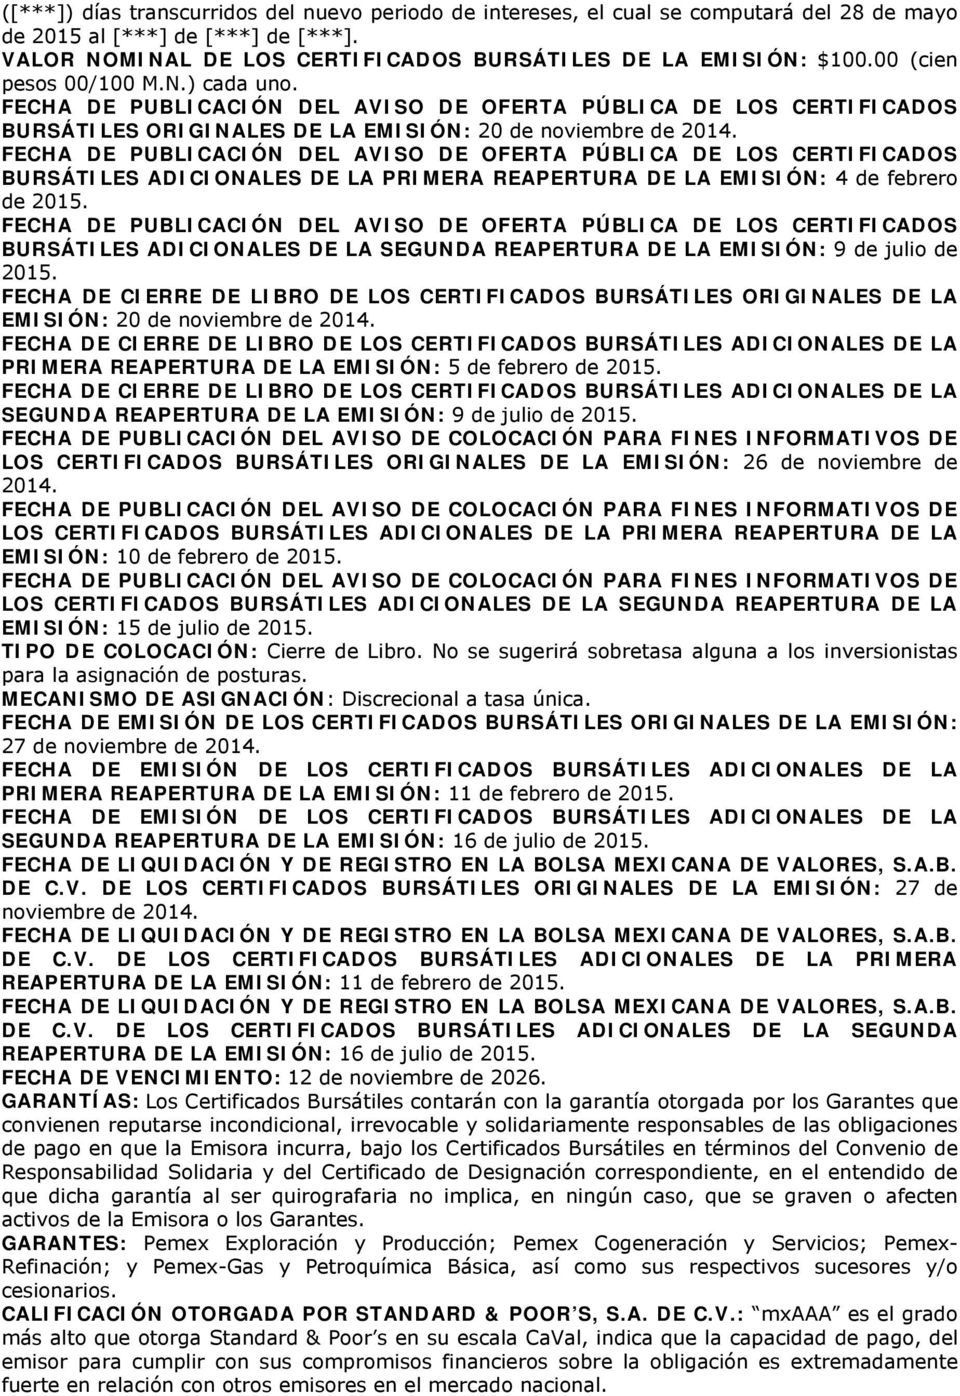 FECHA DE PUBLICACIÓN DEL AVISO DE OFERTA PÚBLICA DE LOS CERTIFICADOS BURSÁTILES ADICIONALES DE LA PRIMERA REAPERTURA DE LA EMISIÓN: 4 de febrero de 2015.